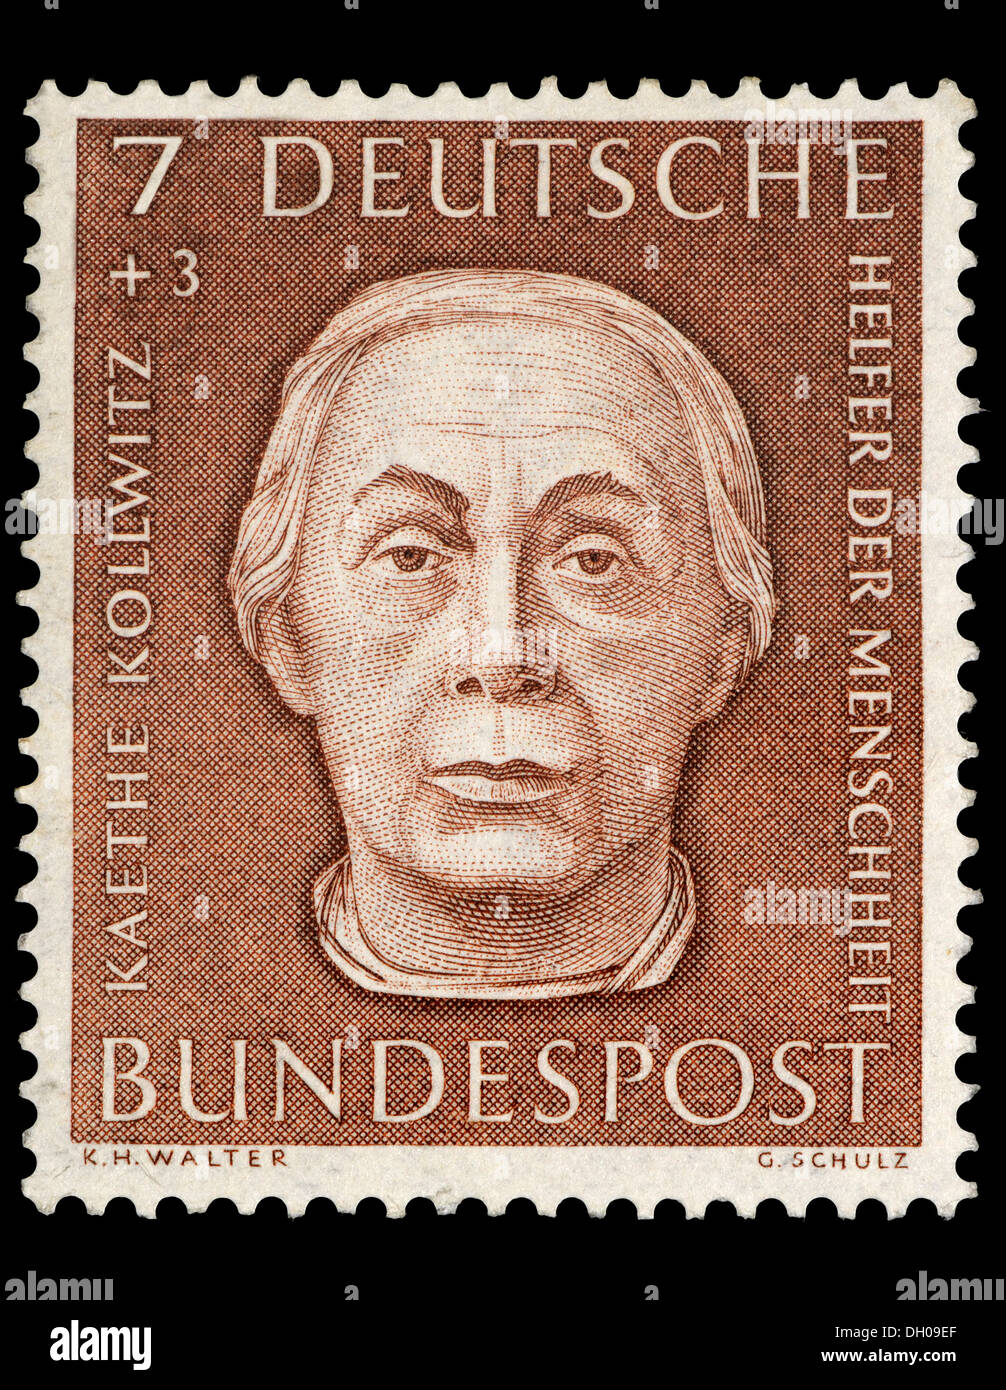 Portrait de Käthe Kollwitz (1867-1945 : peintre, graveur et sculpteur) sur timbre-poste allemand. Banque D'Images